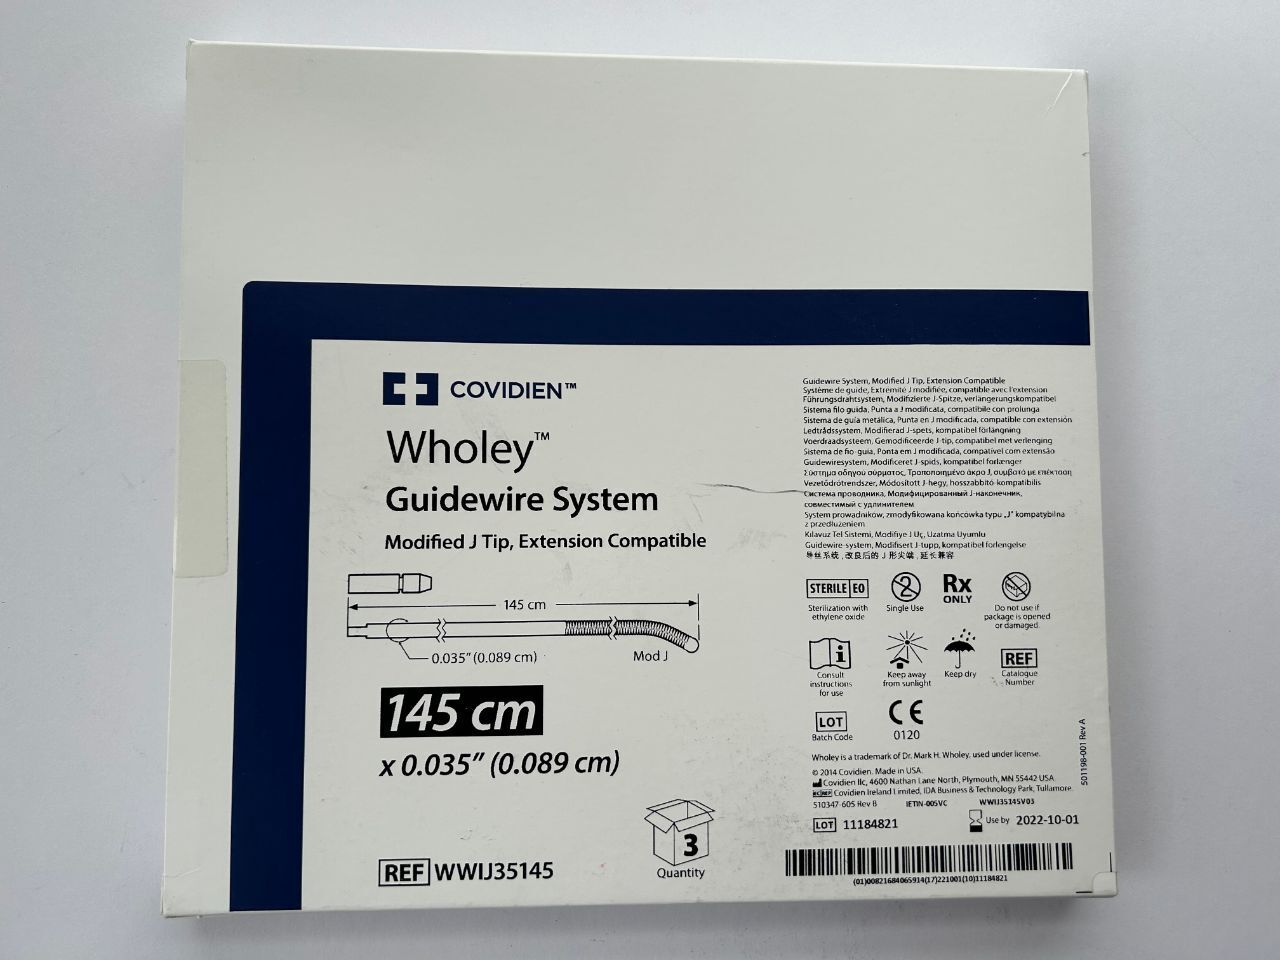 Covidien Wholey Guidewire System Modified J Tip, Extension Compatible 145 cm x 0.035Ã¢ÂÂ (0.089 cm) REF: WWIJ35145